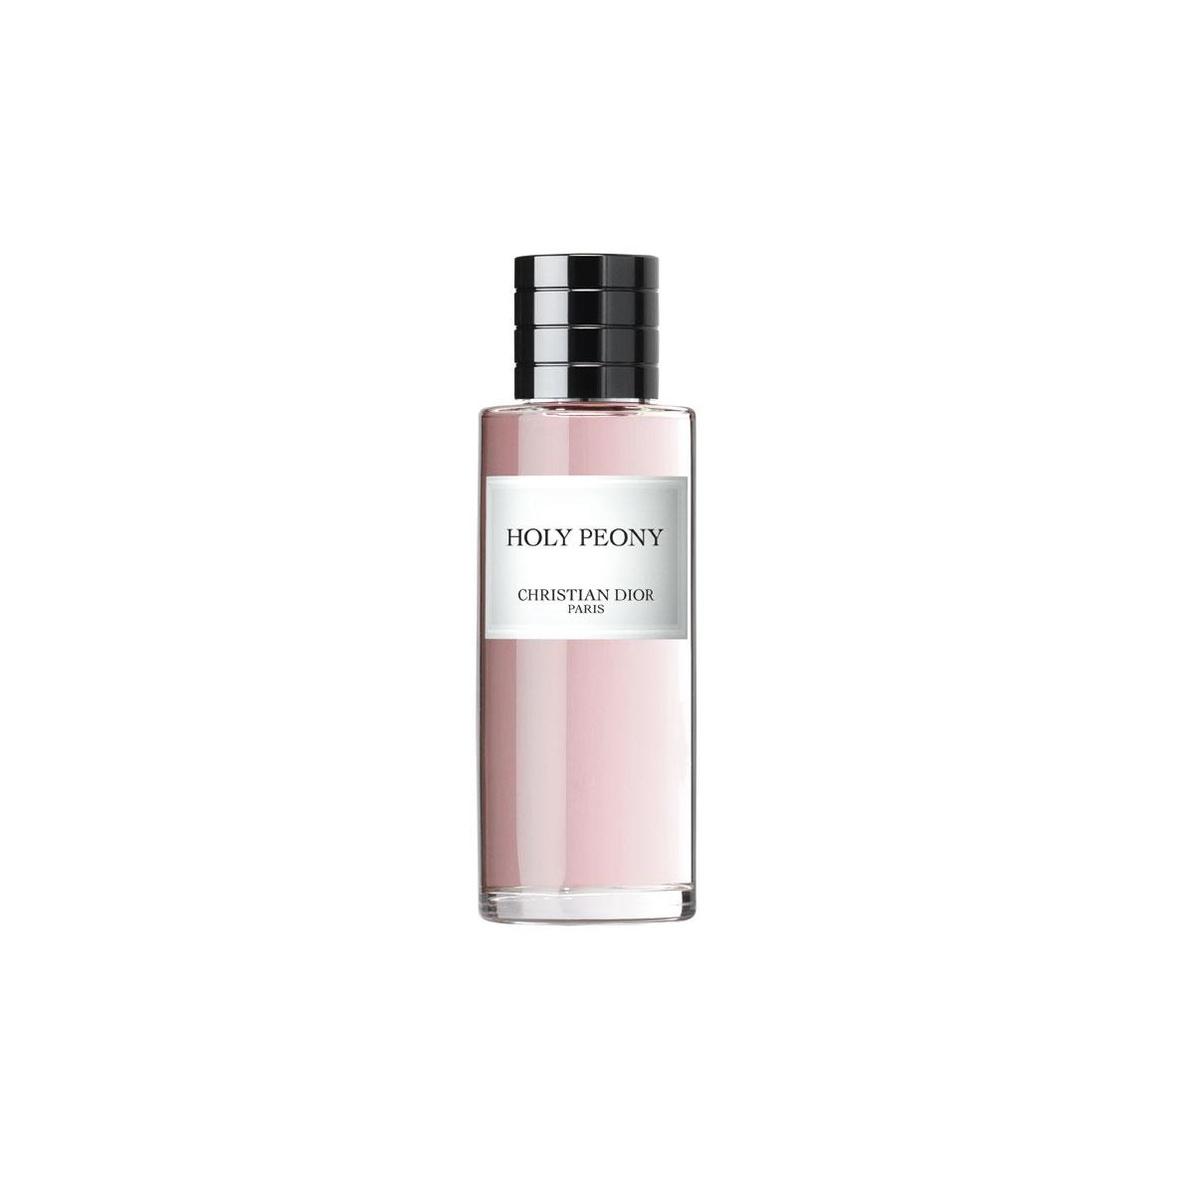 De heerlijke geur van pioenrozen in een flesje: parfum Holy Peony (125ml : vanaf 198 euro) uit de collectie Maison Christian Dior. dior.com